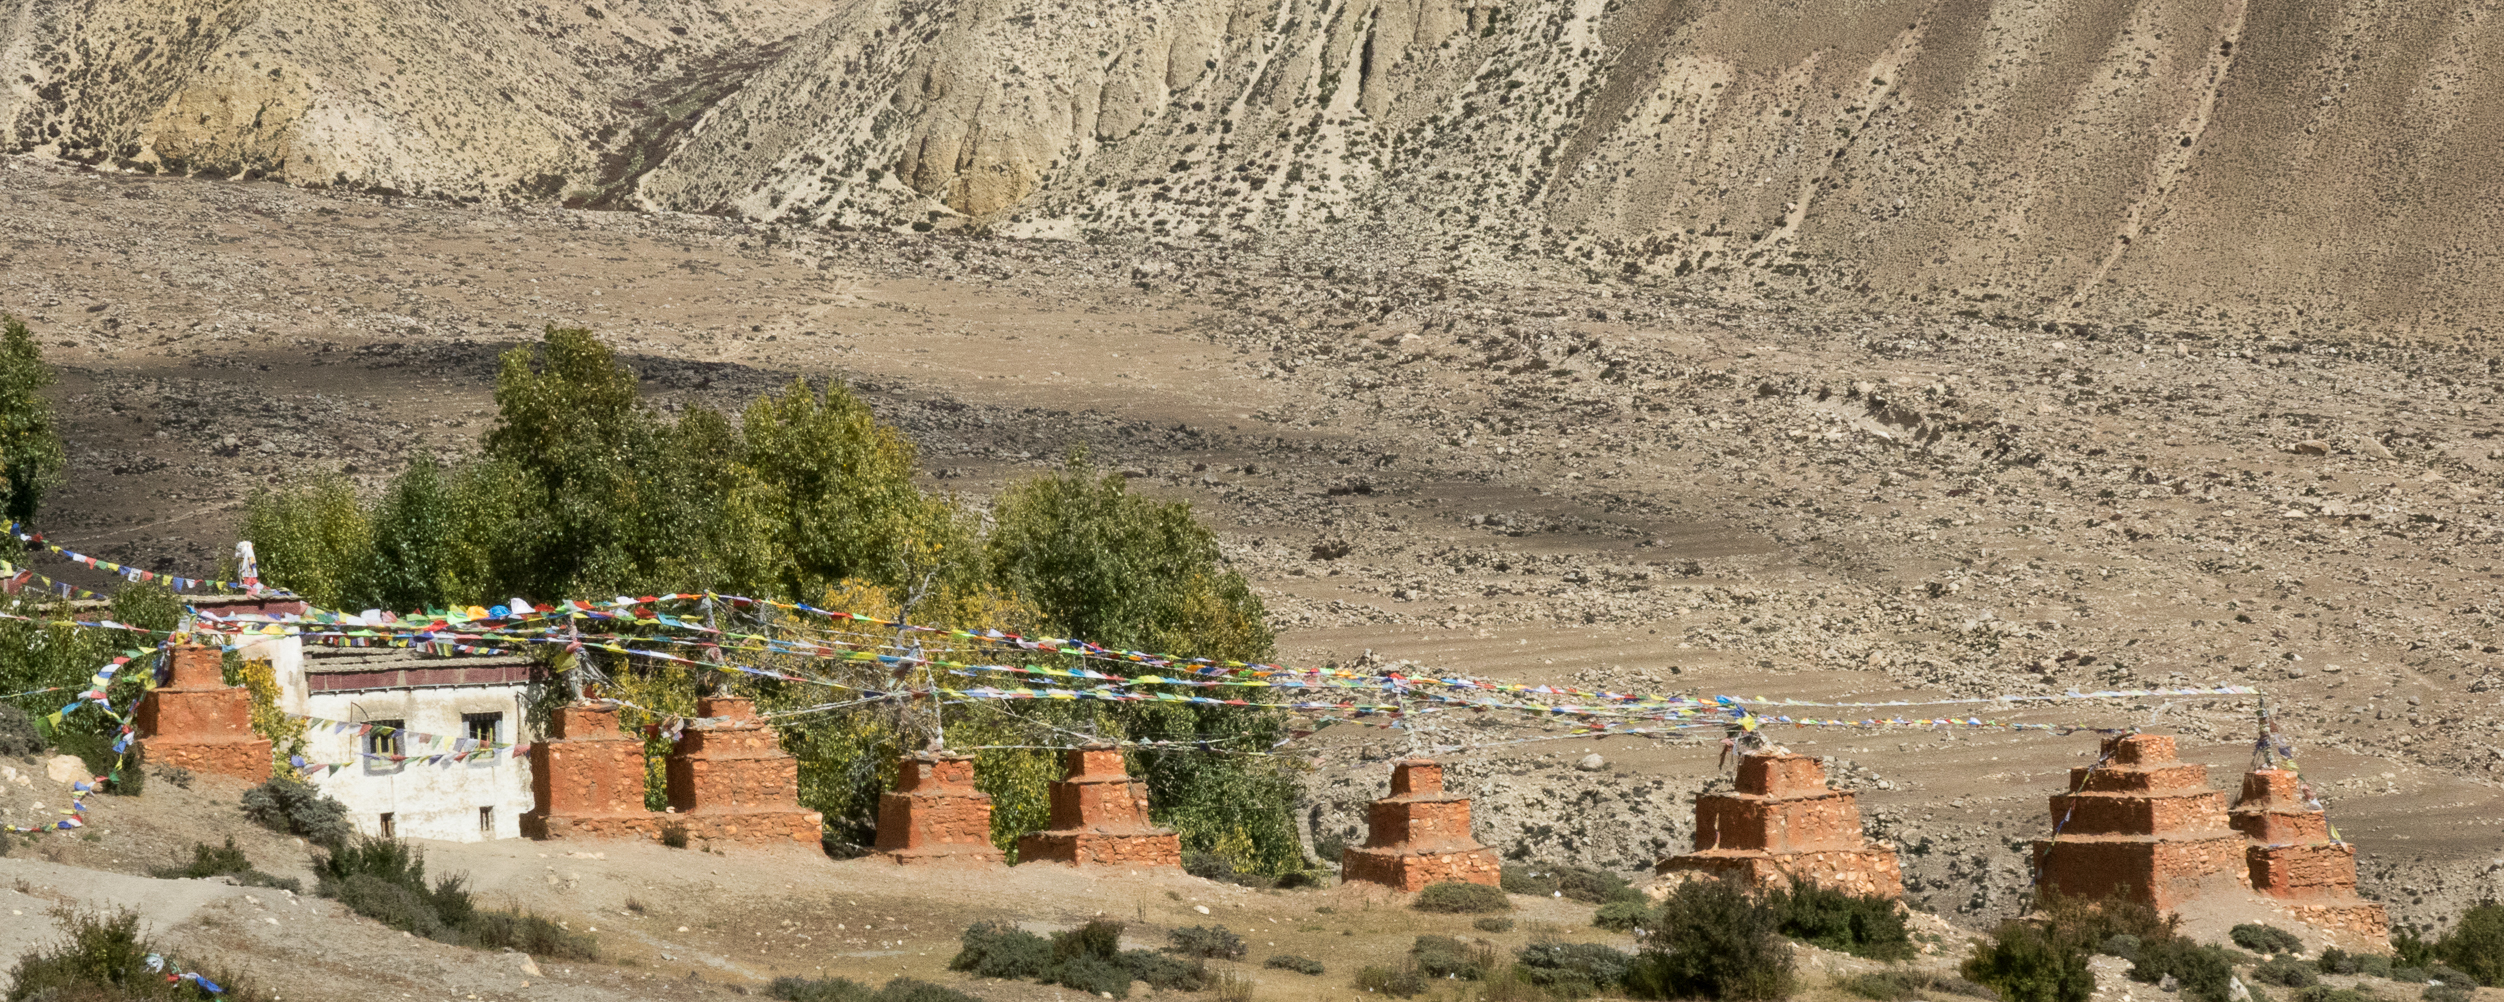 Ghar Gompa avec son monastère, l'un des des plus anciens du Mustang.